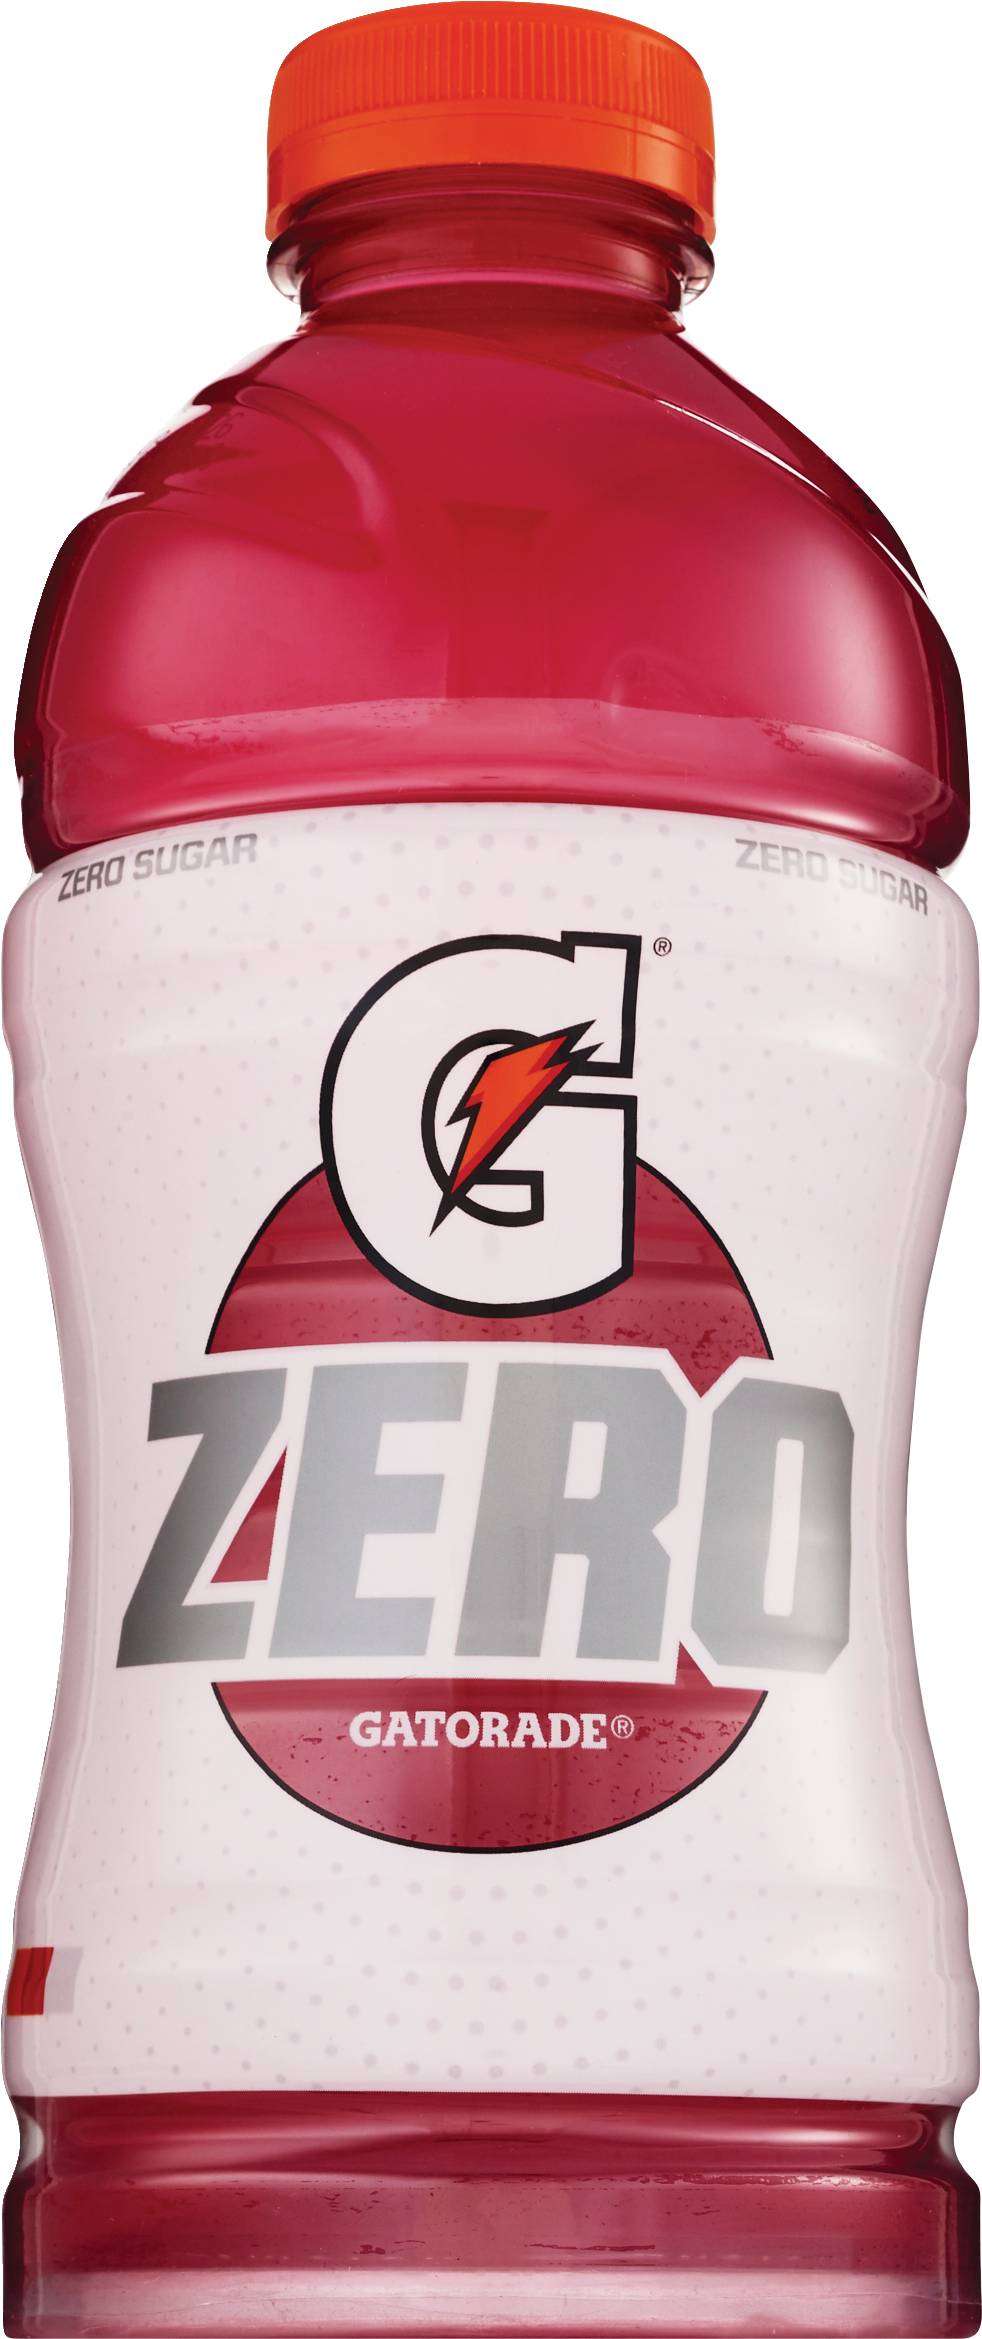 Gatorade Zero Sugar Thirst Quencher Drink, Berry, 28 oz